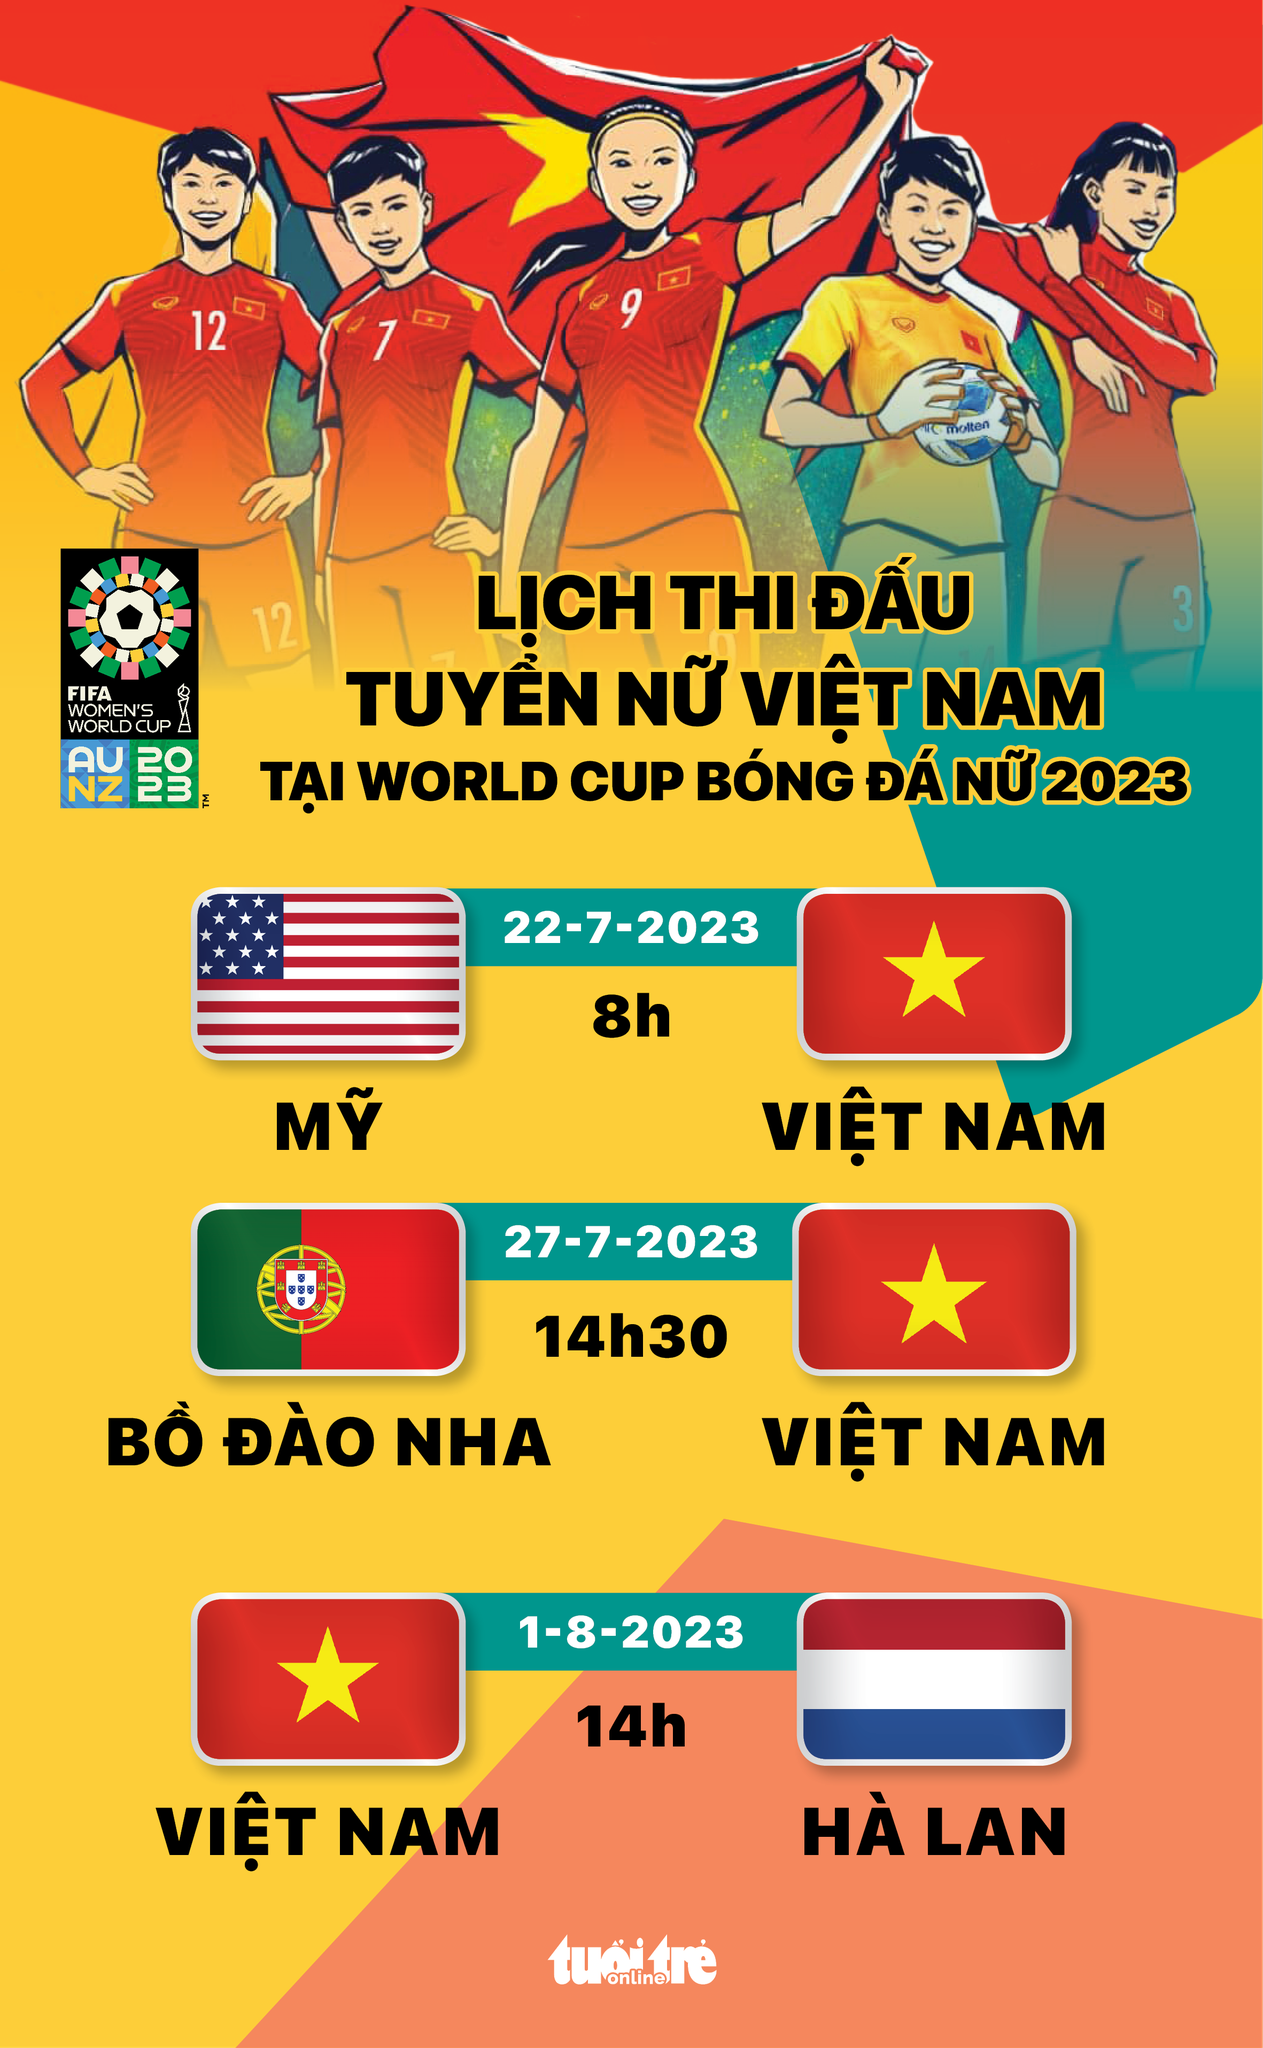 Xem đội tuyển nữ Việt Nam thi đấu World Cup 2023 trên kênh nào? - Ảnh 1.